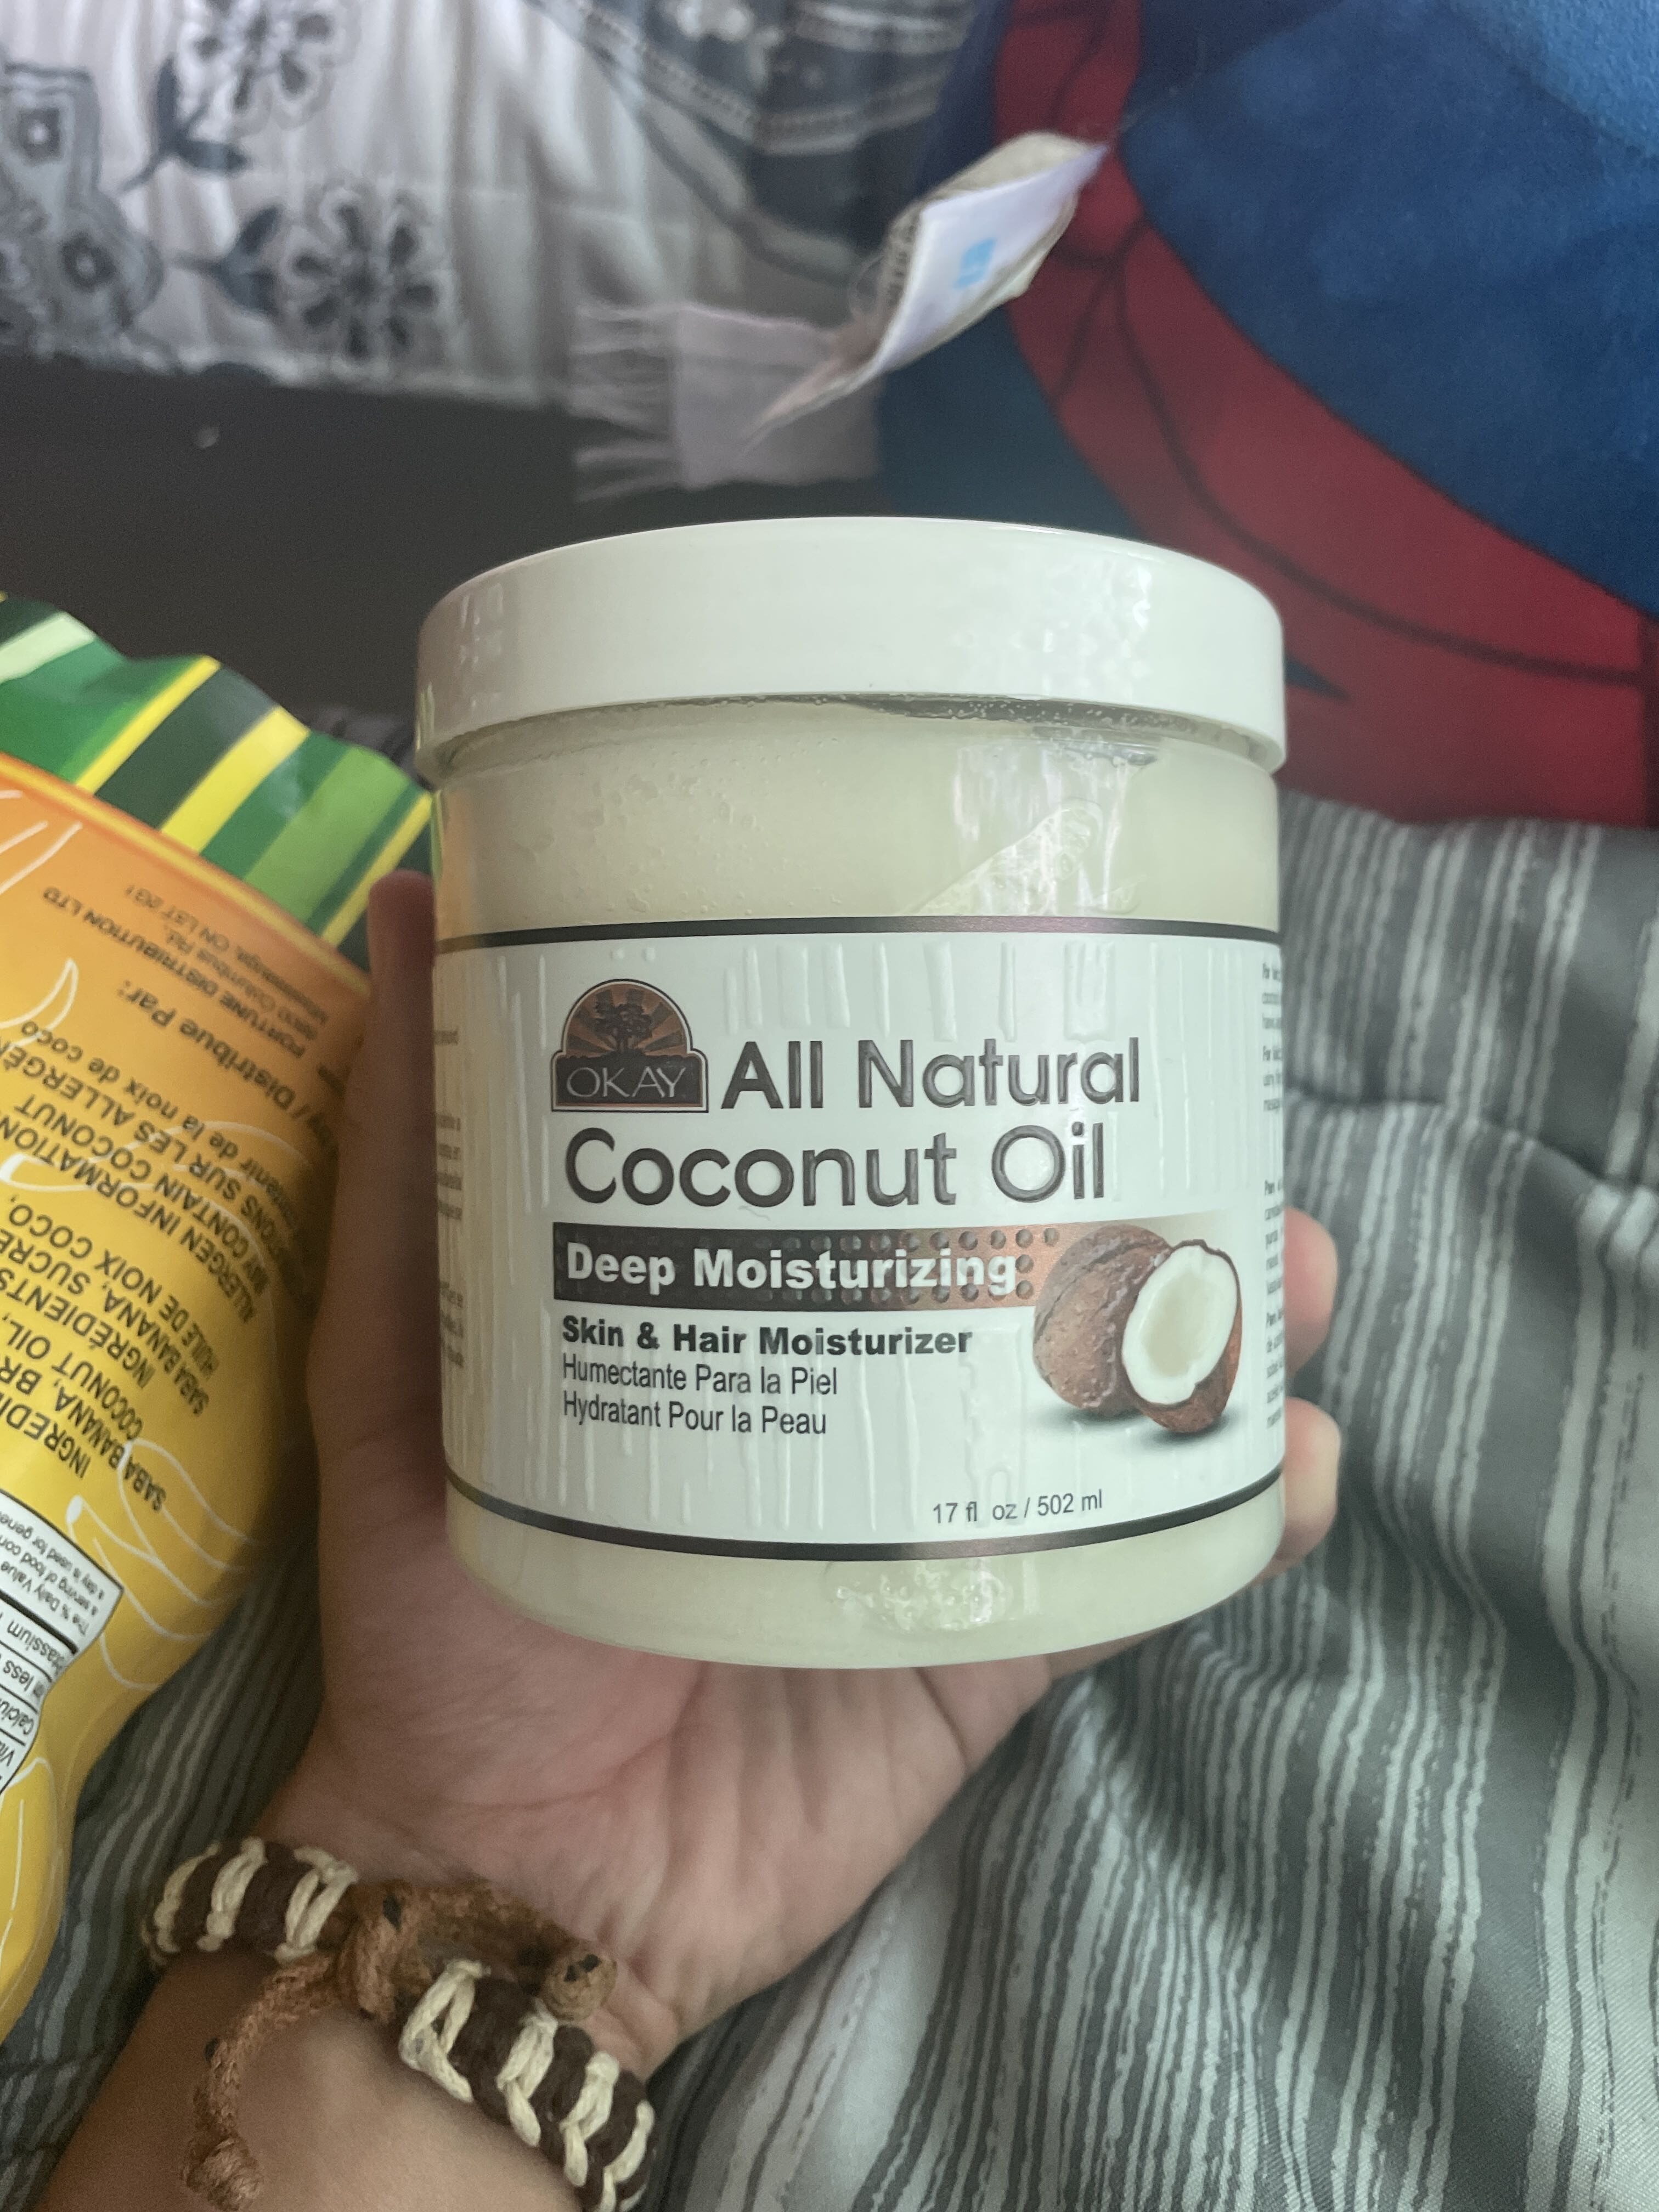 All natural coconut oil - Tuote - en